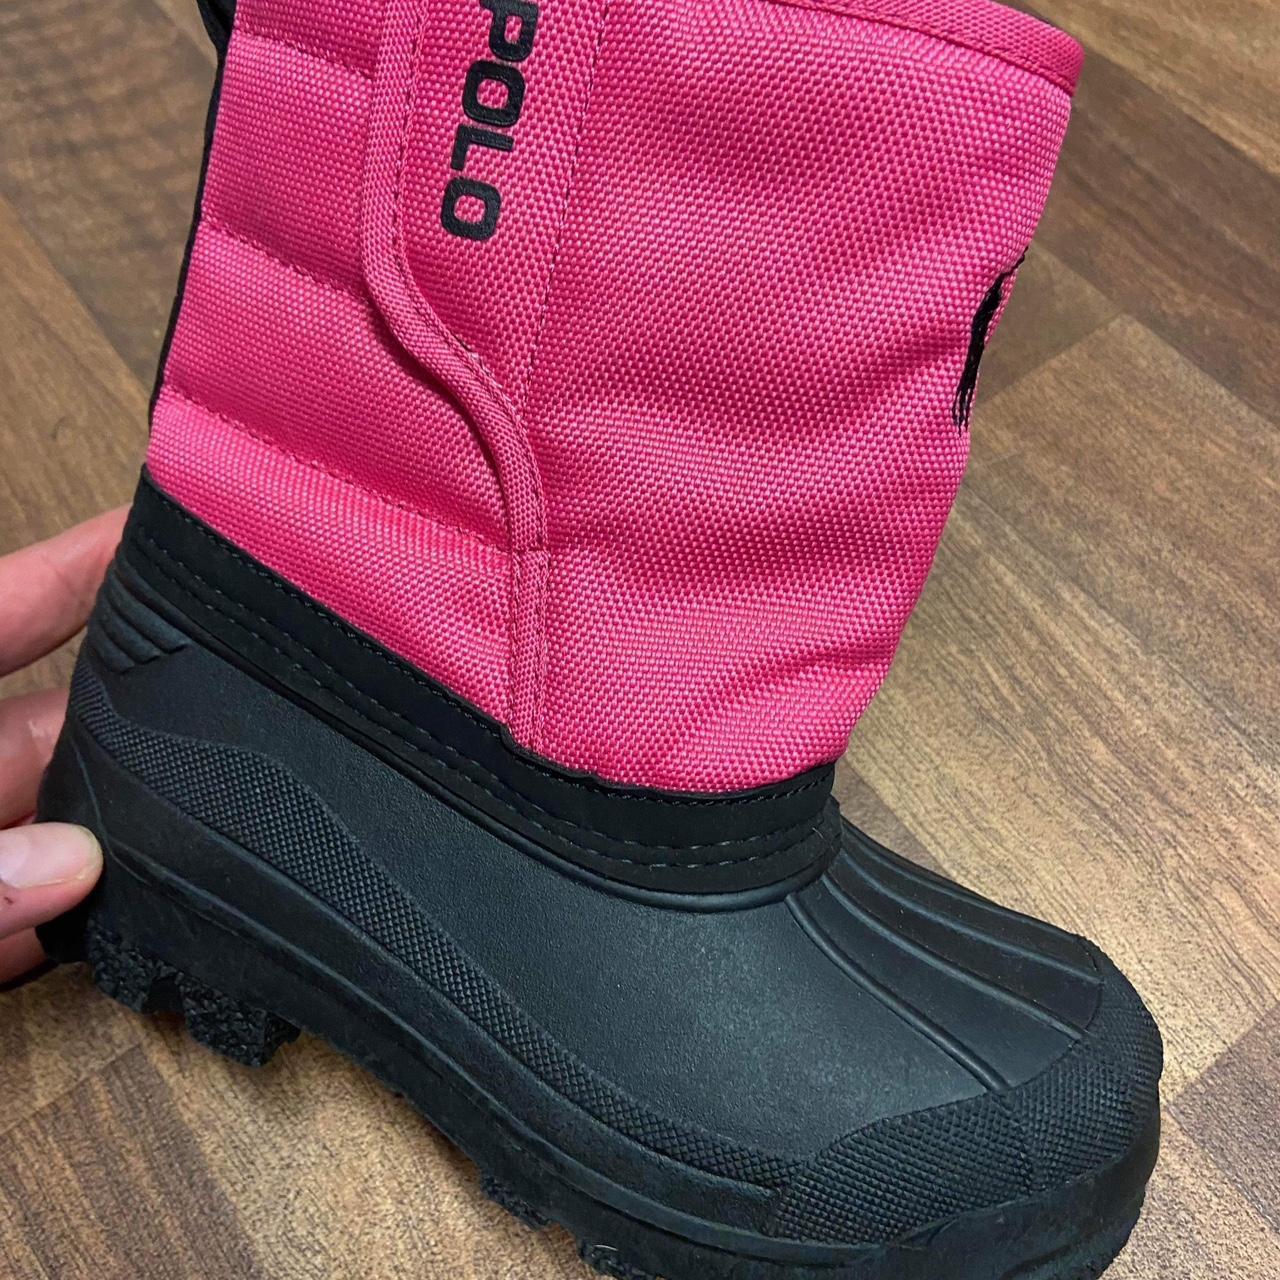 New Ralph Lauren snow boots girl size 12UK 30EU New... - Depop